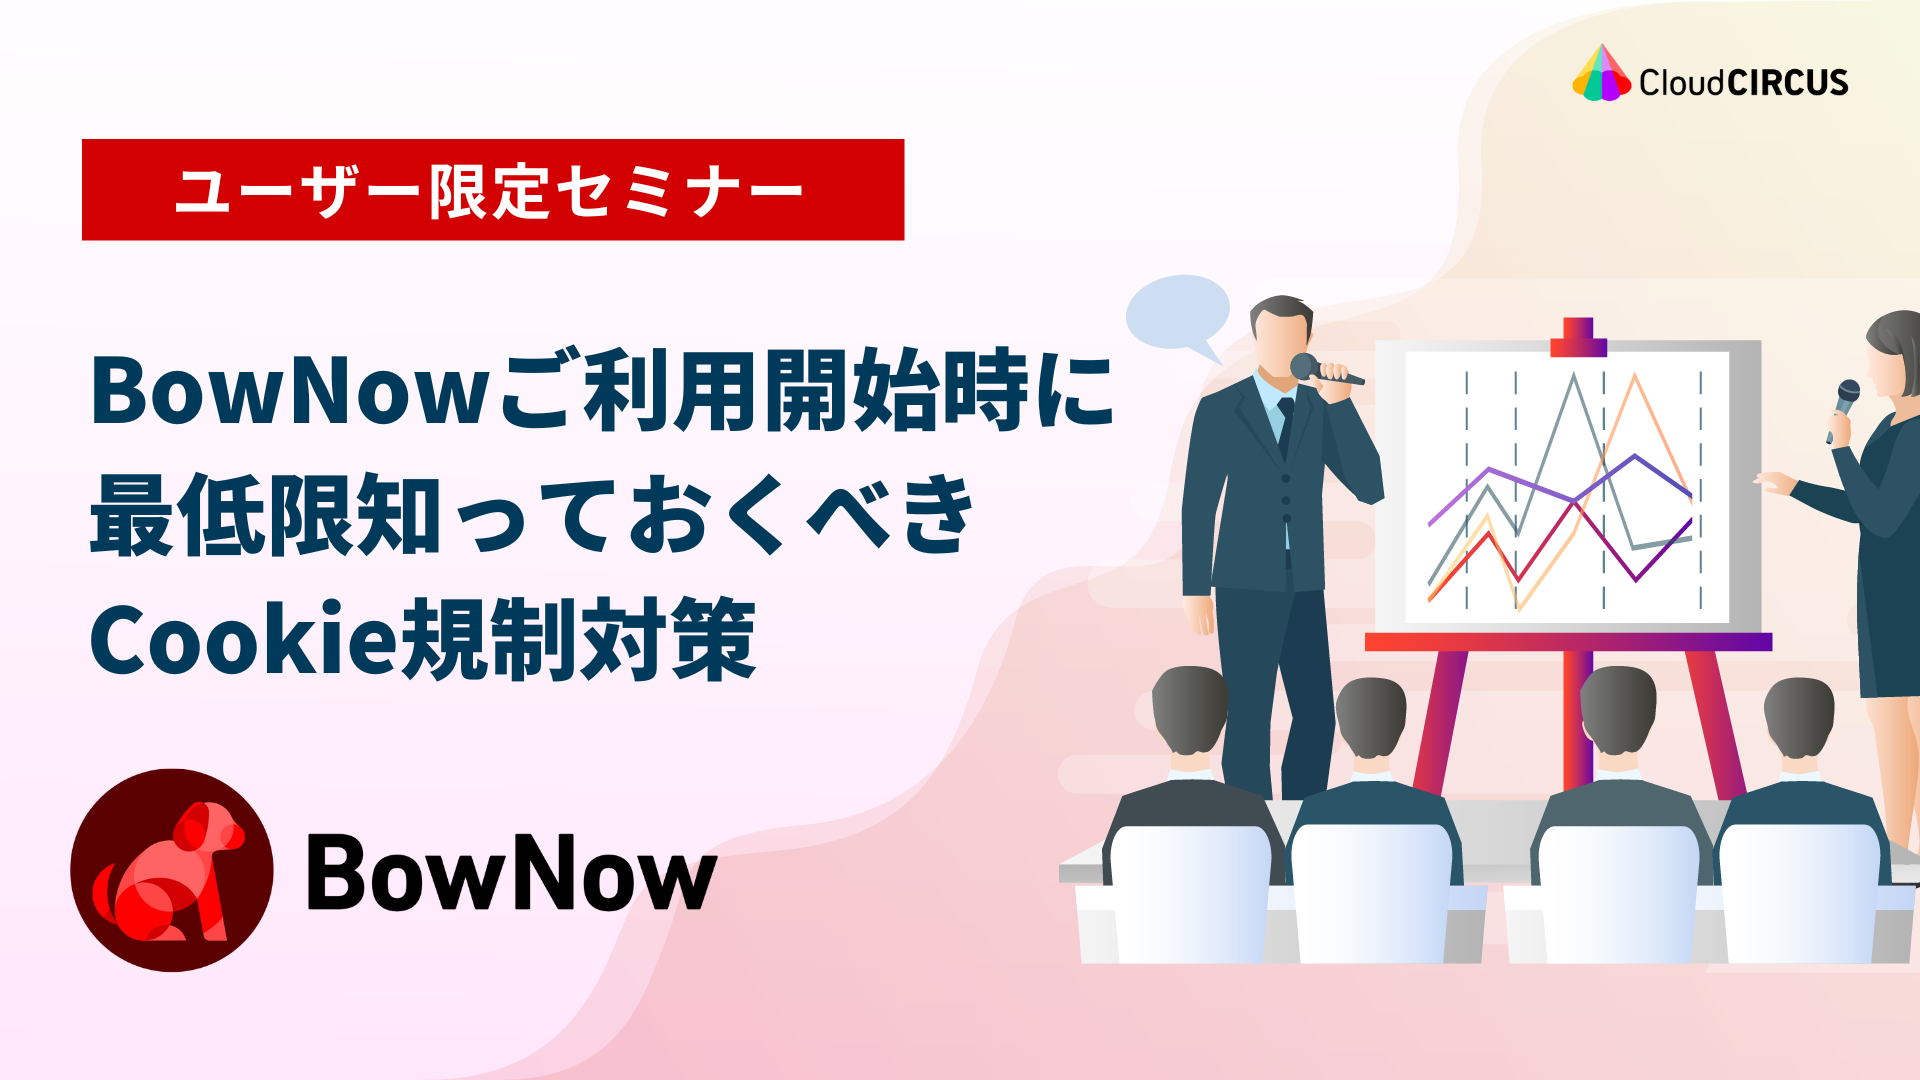 【11月15日(火)】BowNowユーザー向けIZANAI事例勉強会